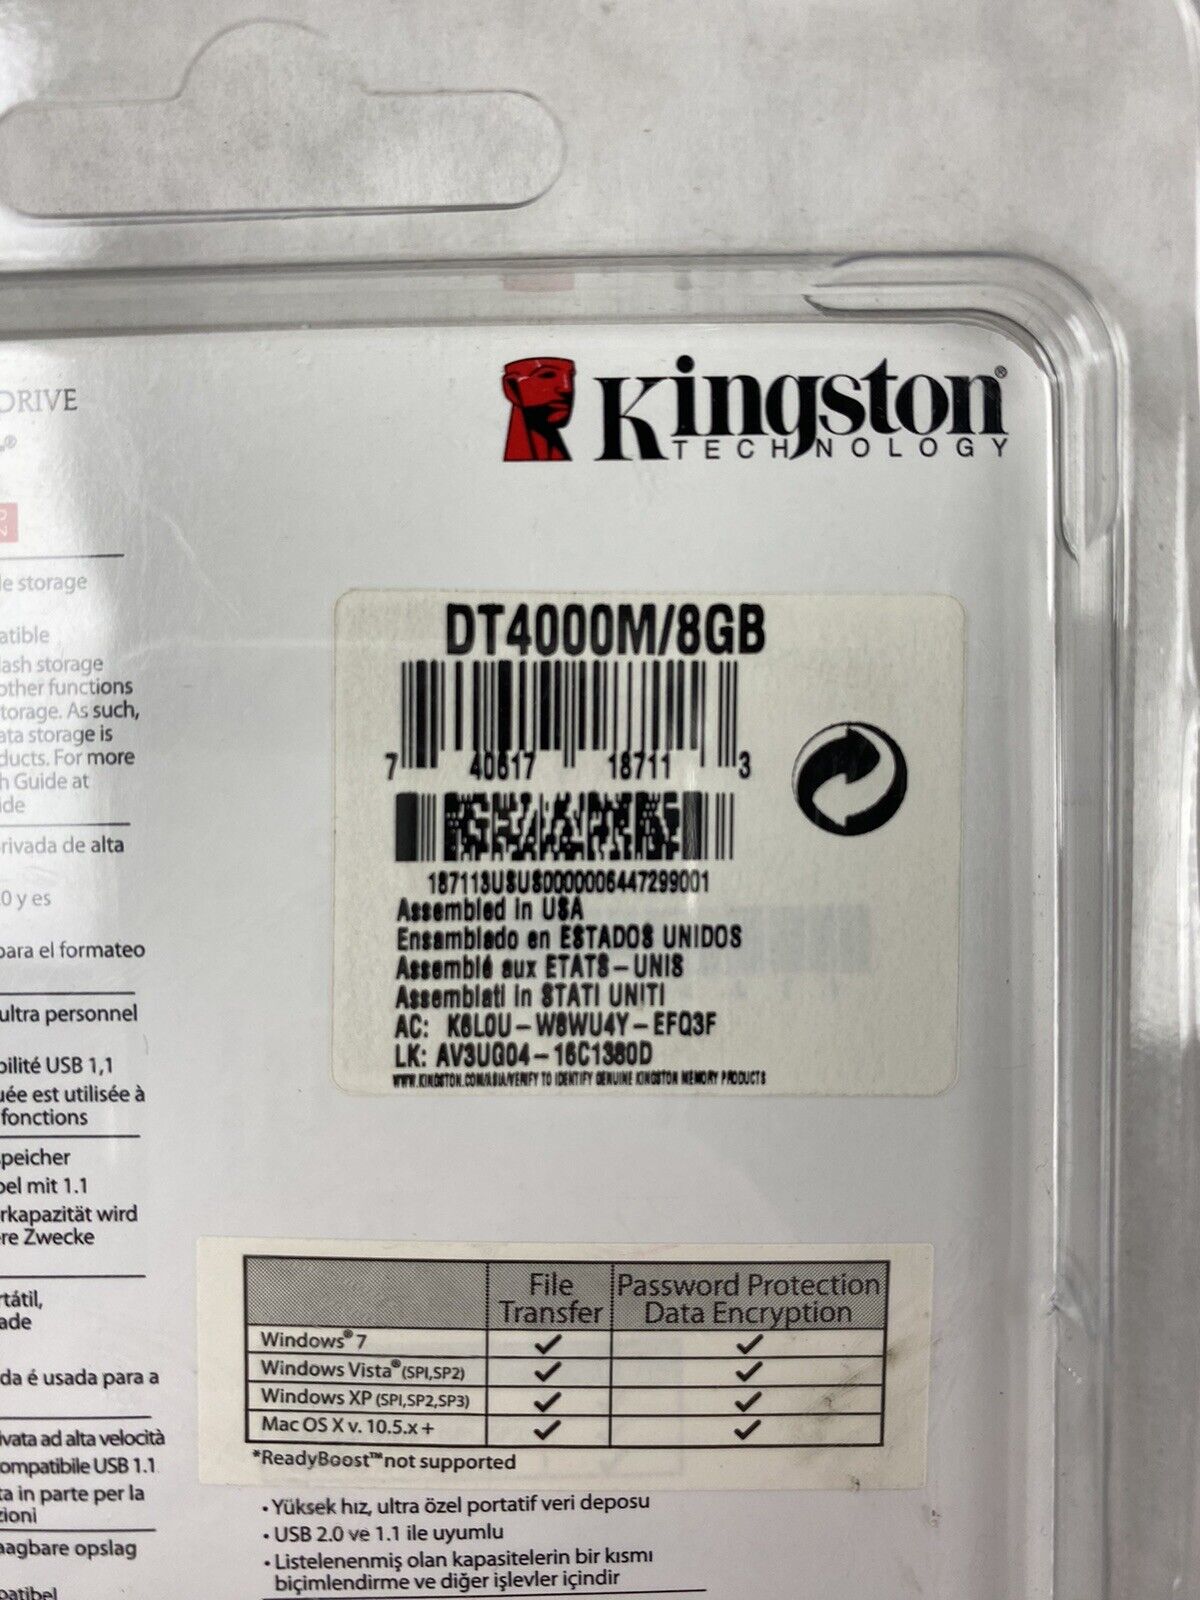 Kingston Technology 8GB DataTraveler 4000